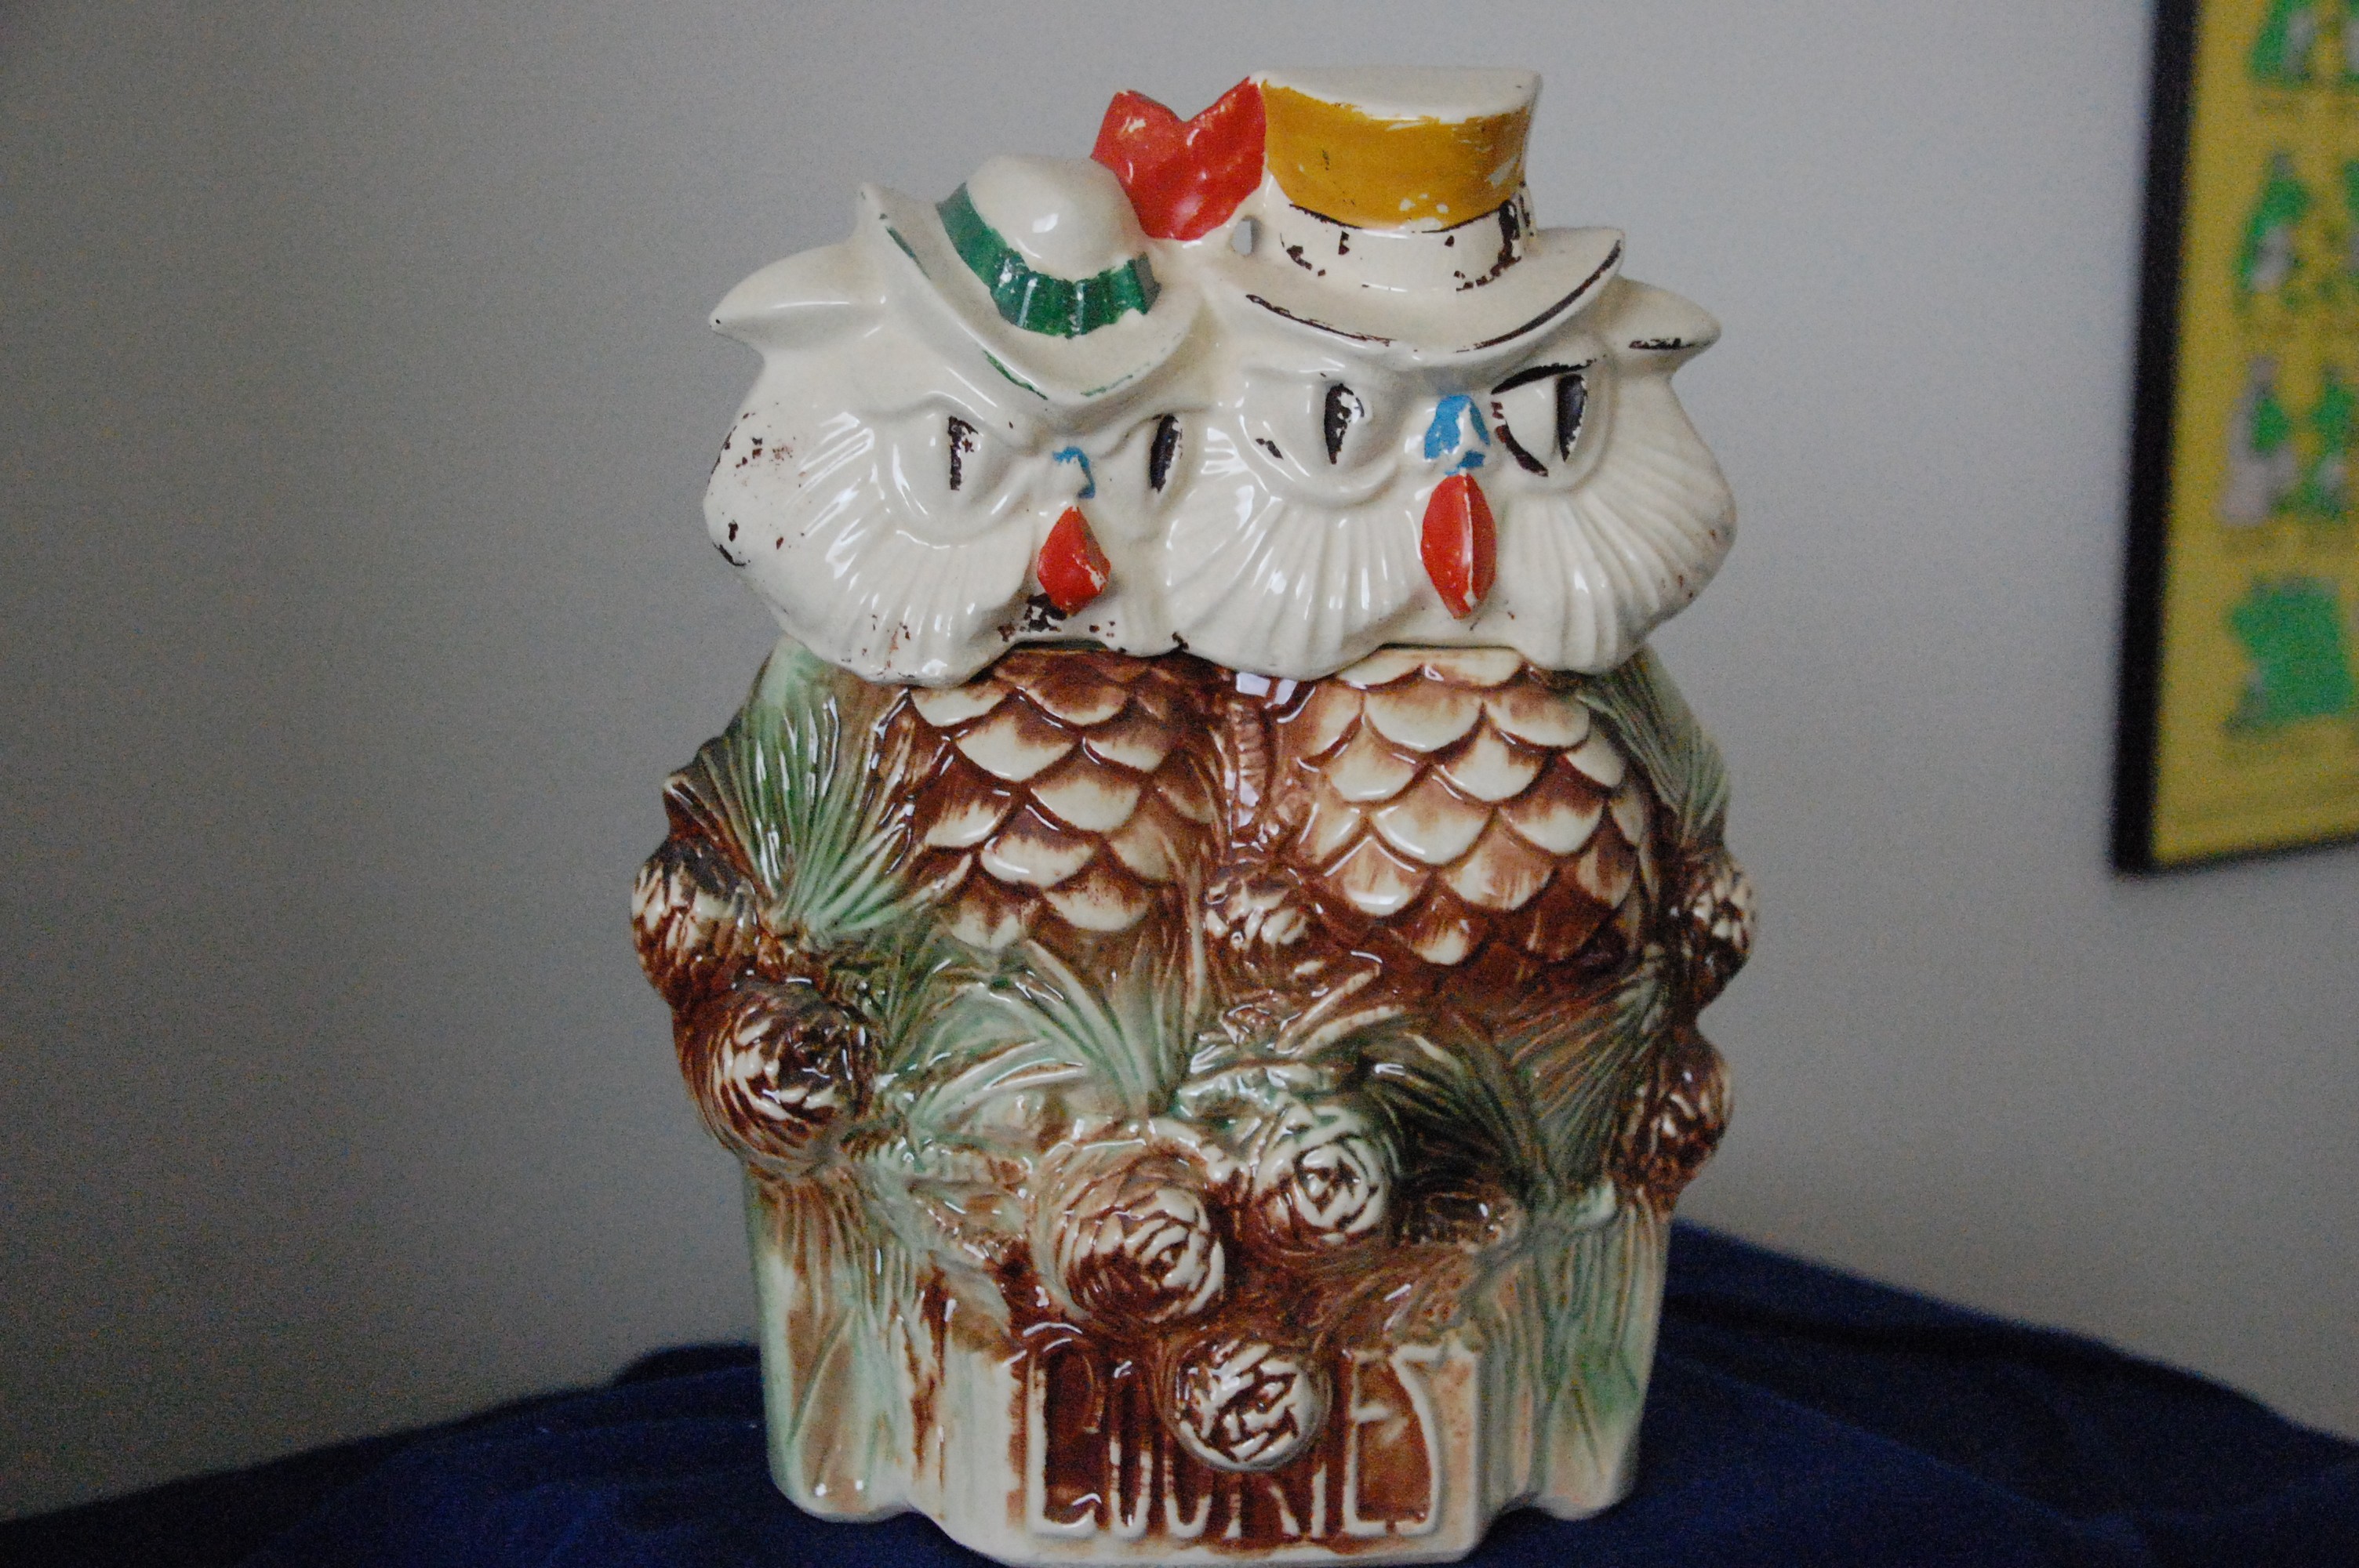 Mr. & Mrs. Owl Cookie Jar by McCoy